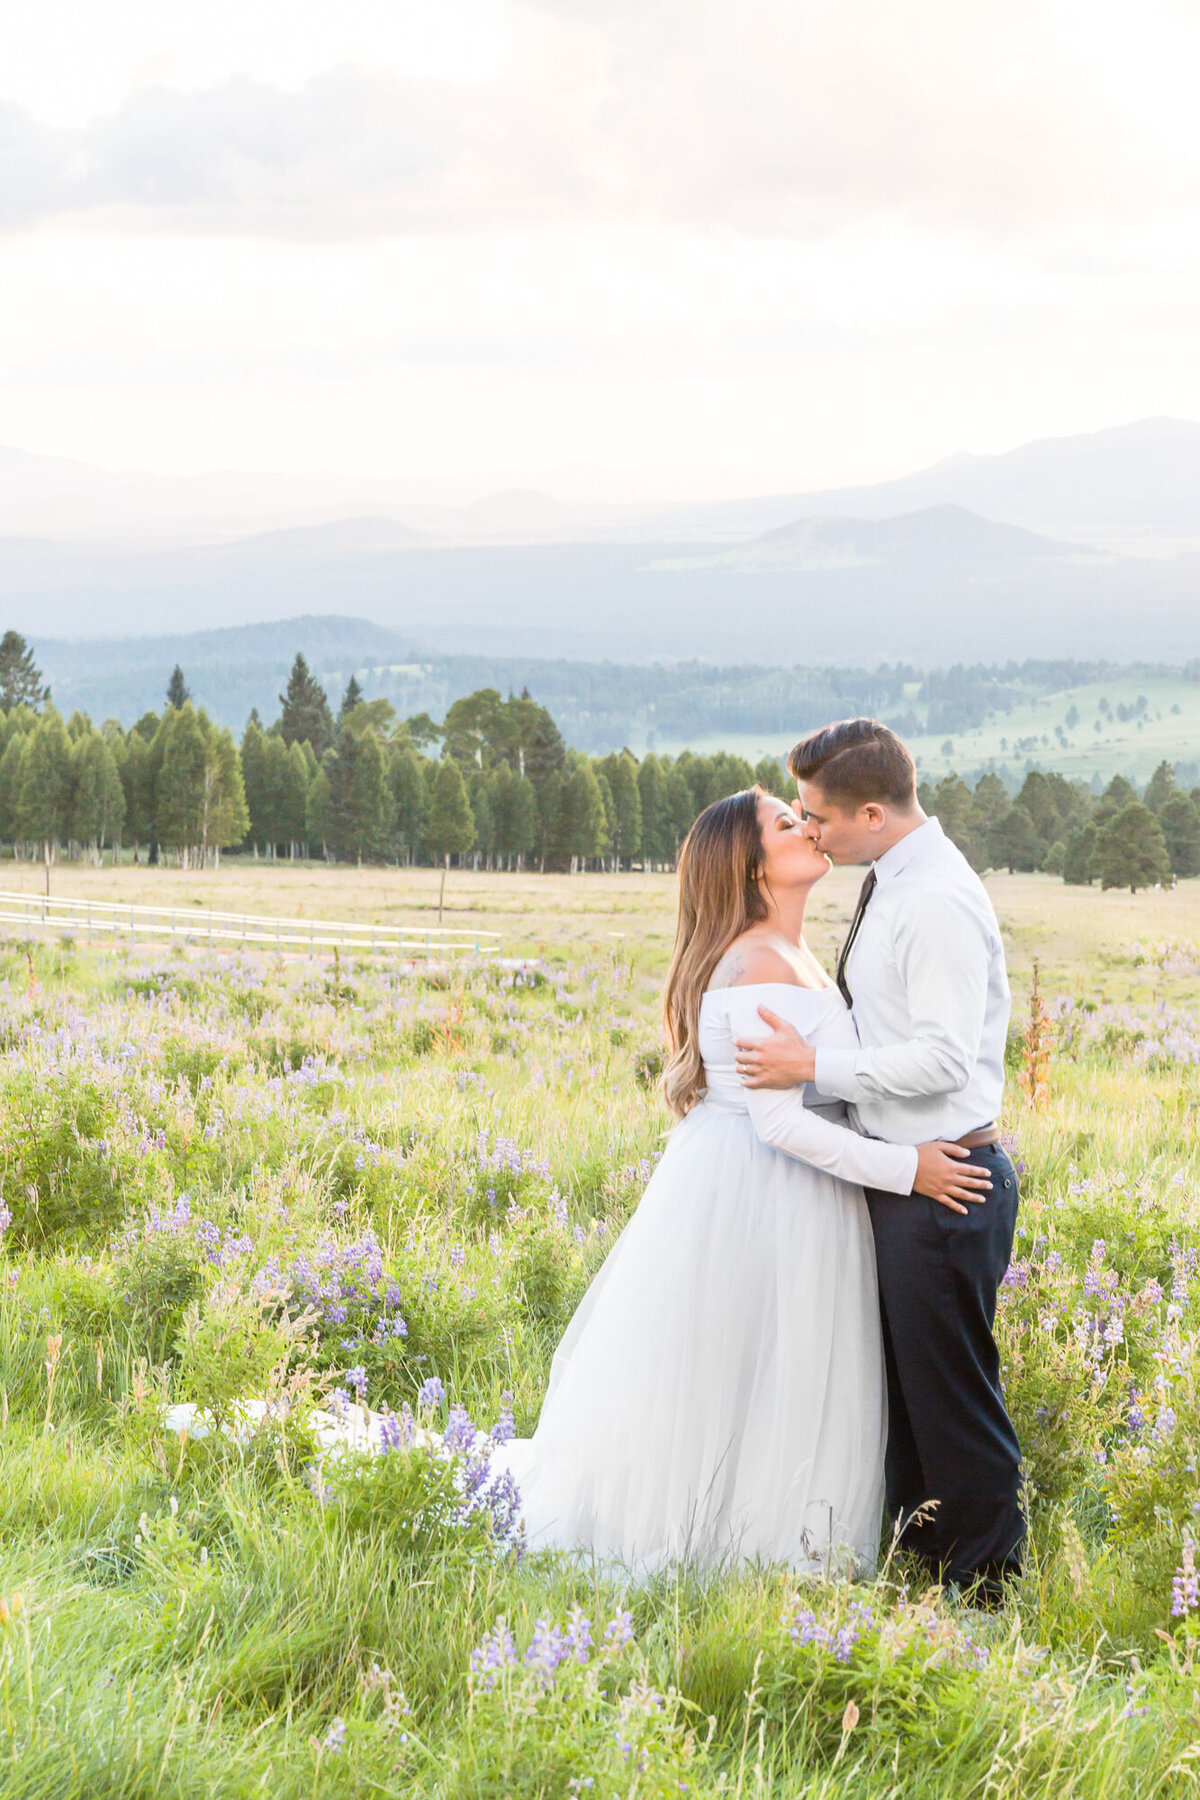 Wedding Couple Portrait Photography - Flagstaff, Arizona - Bayley Jordan Photography